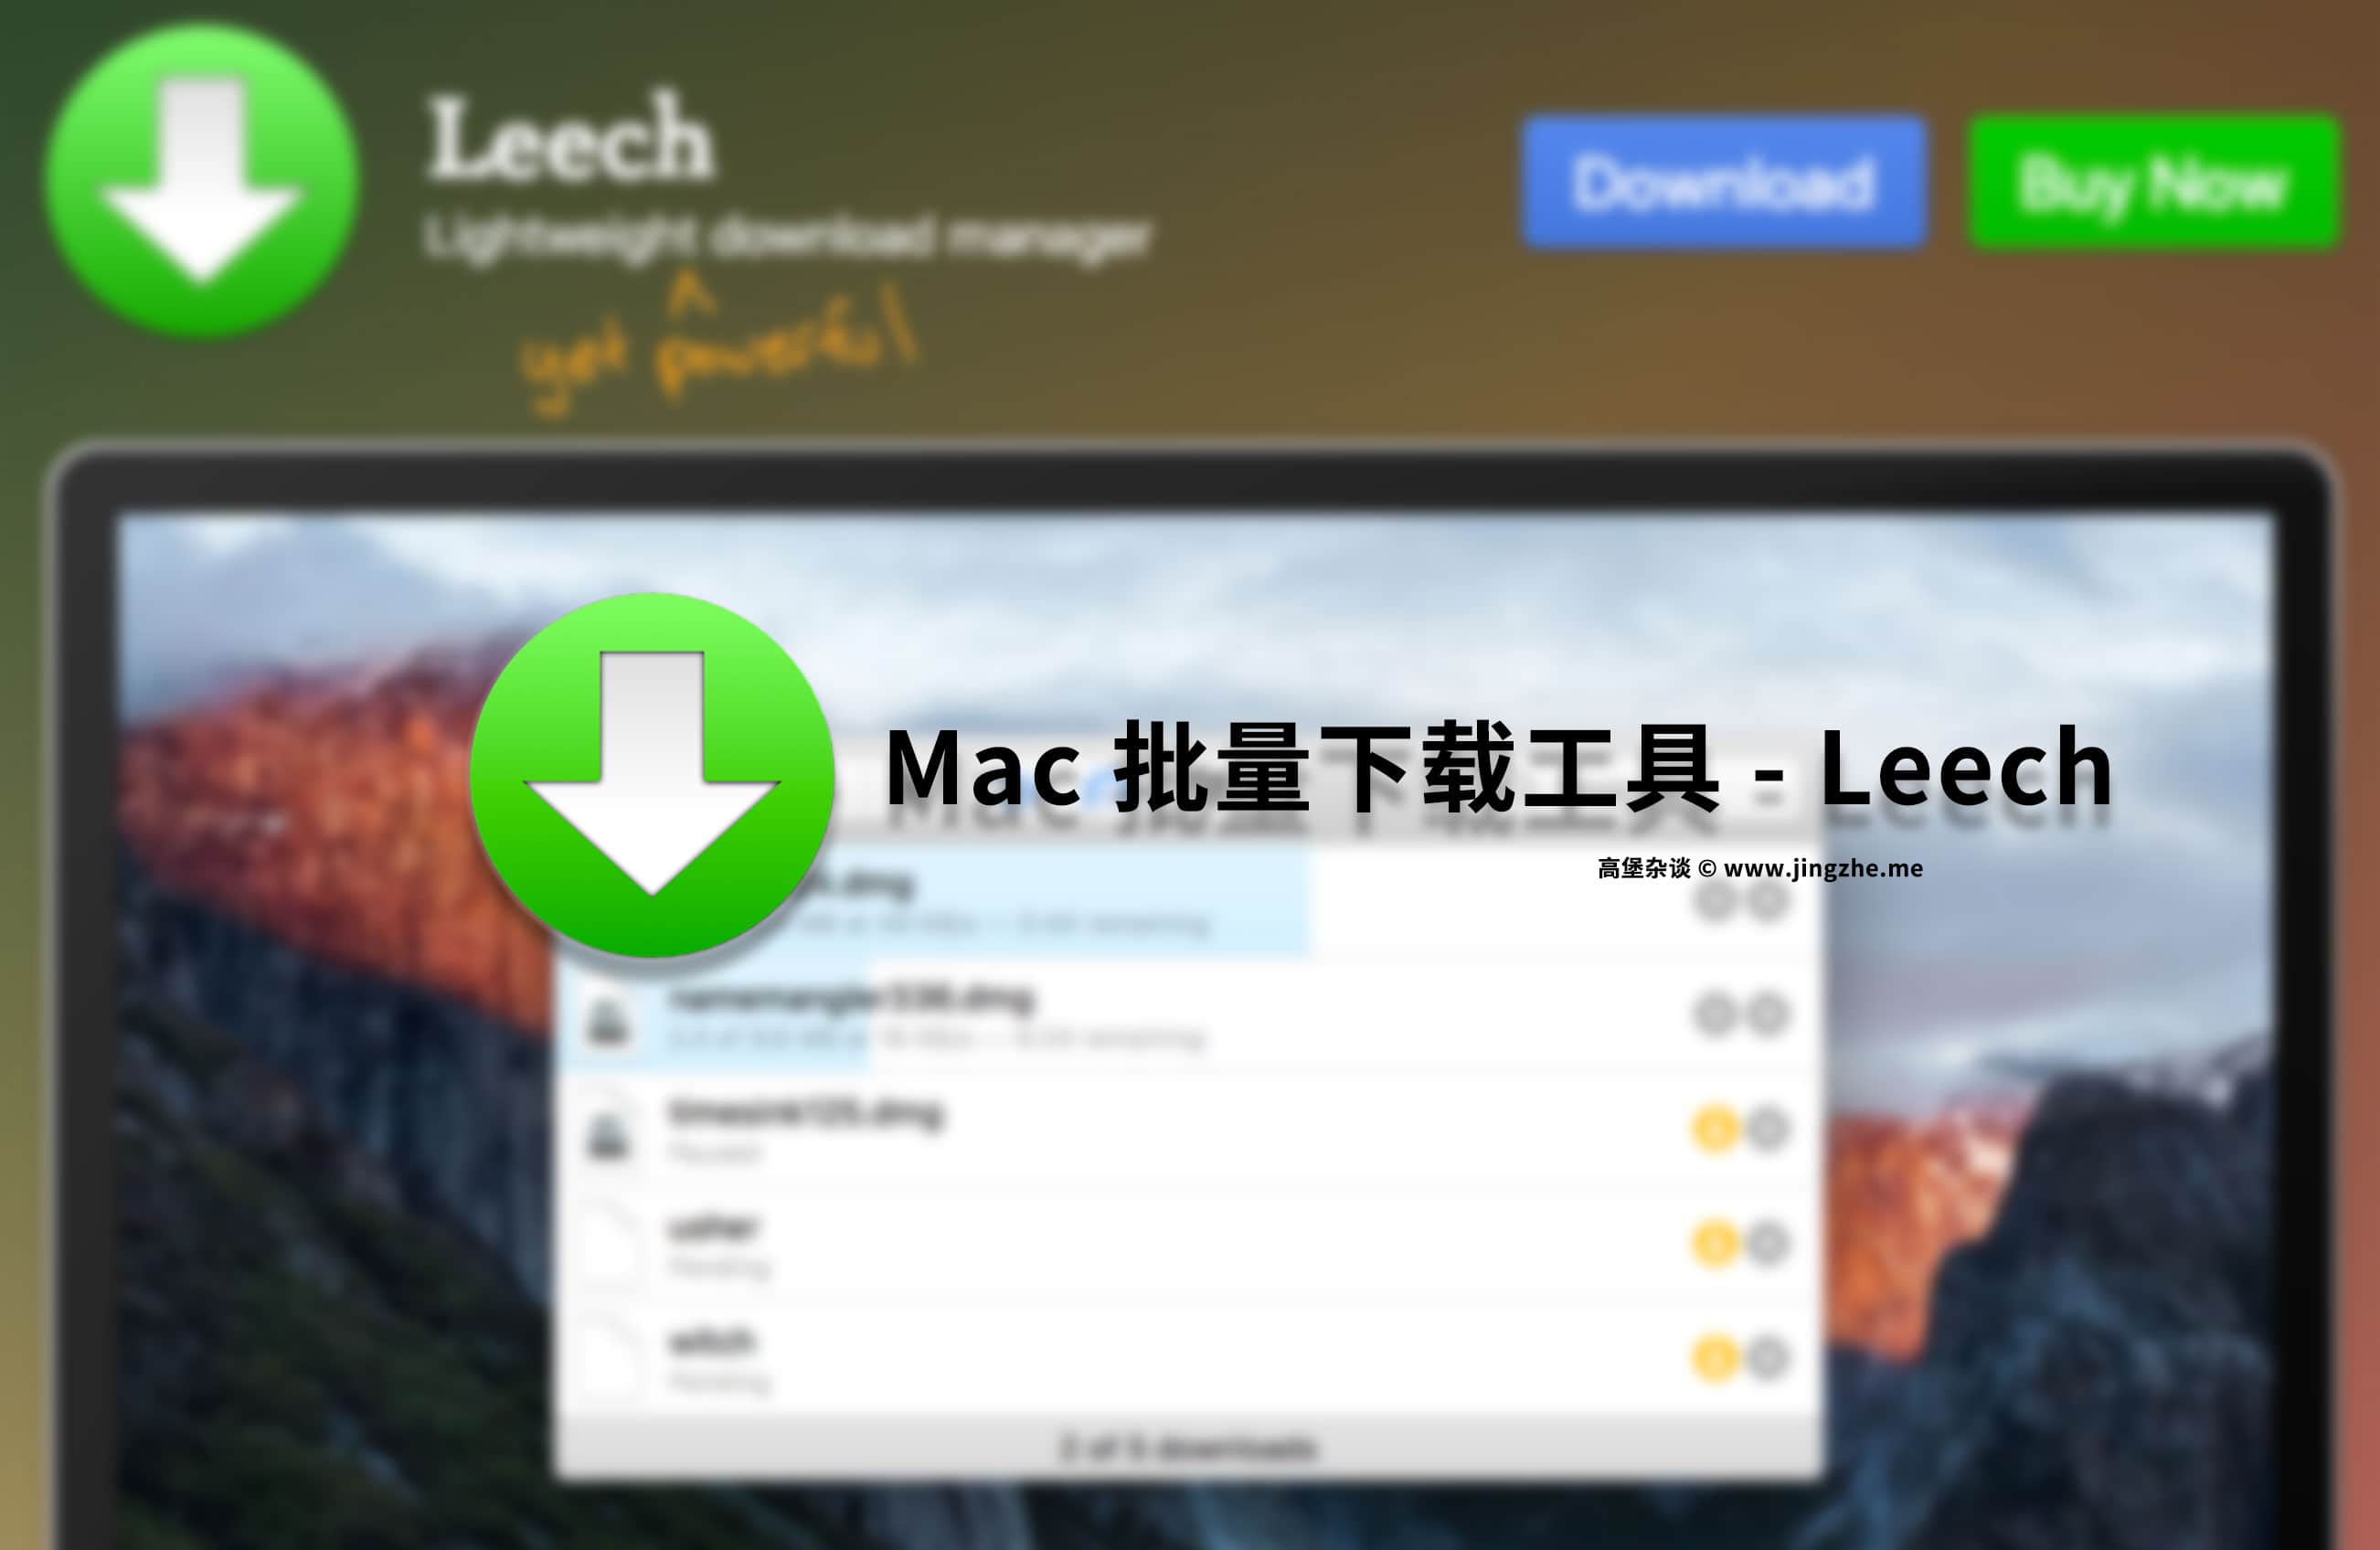 我终于找到了一款 Mac 的批量下载工具 - Leech